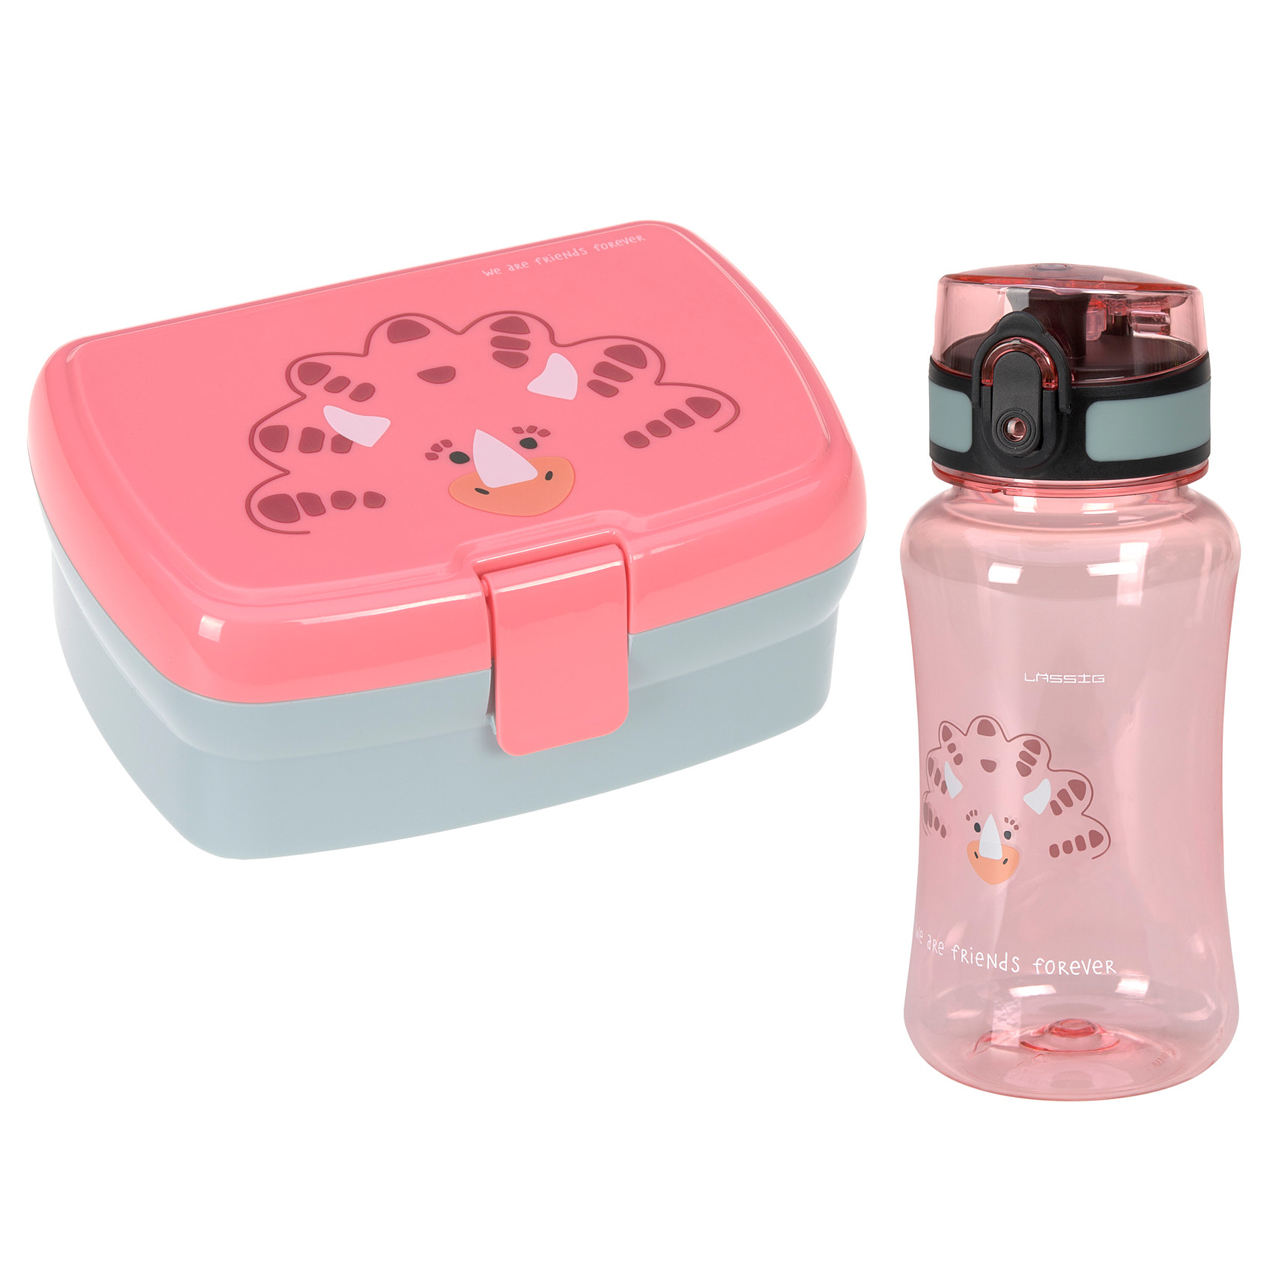 Laessig-Brotdose-Trinkflasche-Lunch-Set-Dino-Rose-pink-BPA-frei-1210057549-online-kaufen-lafueliki